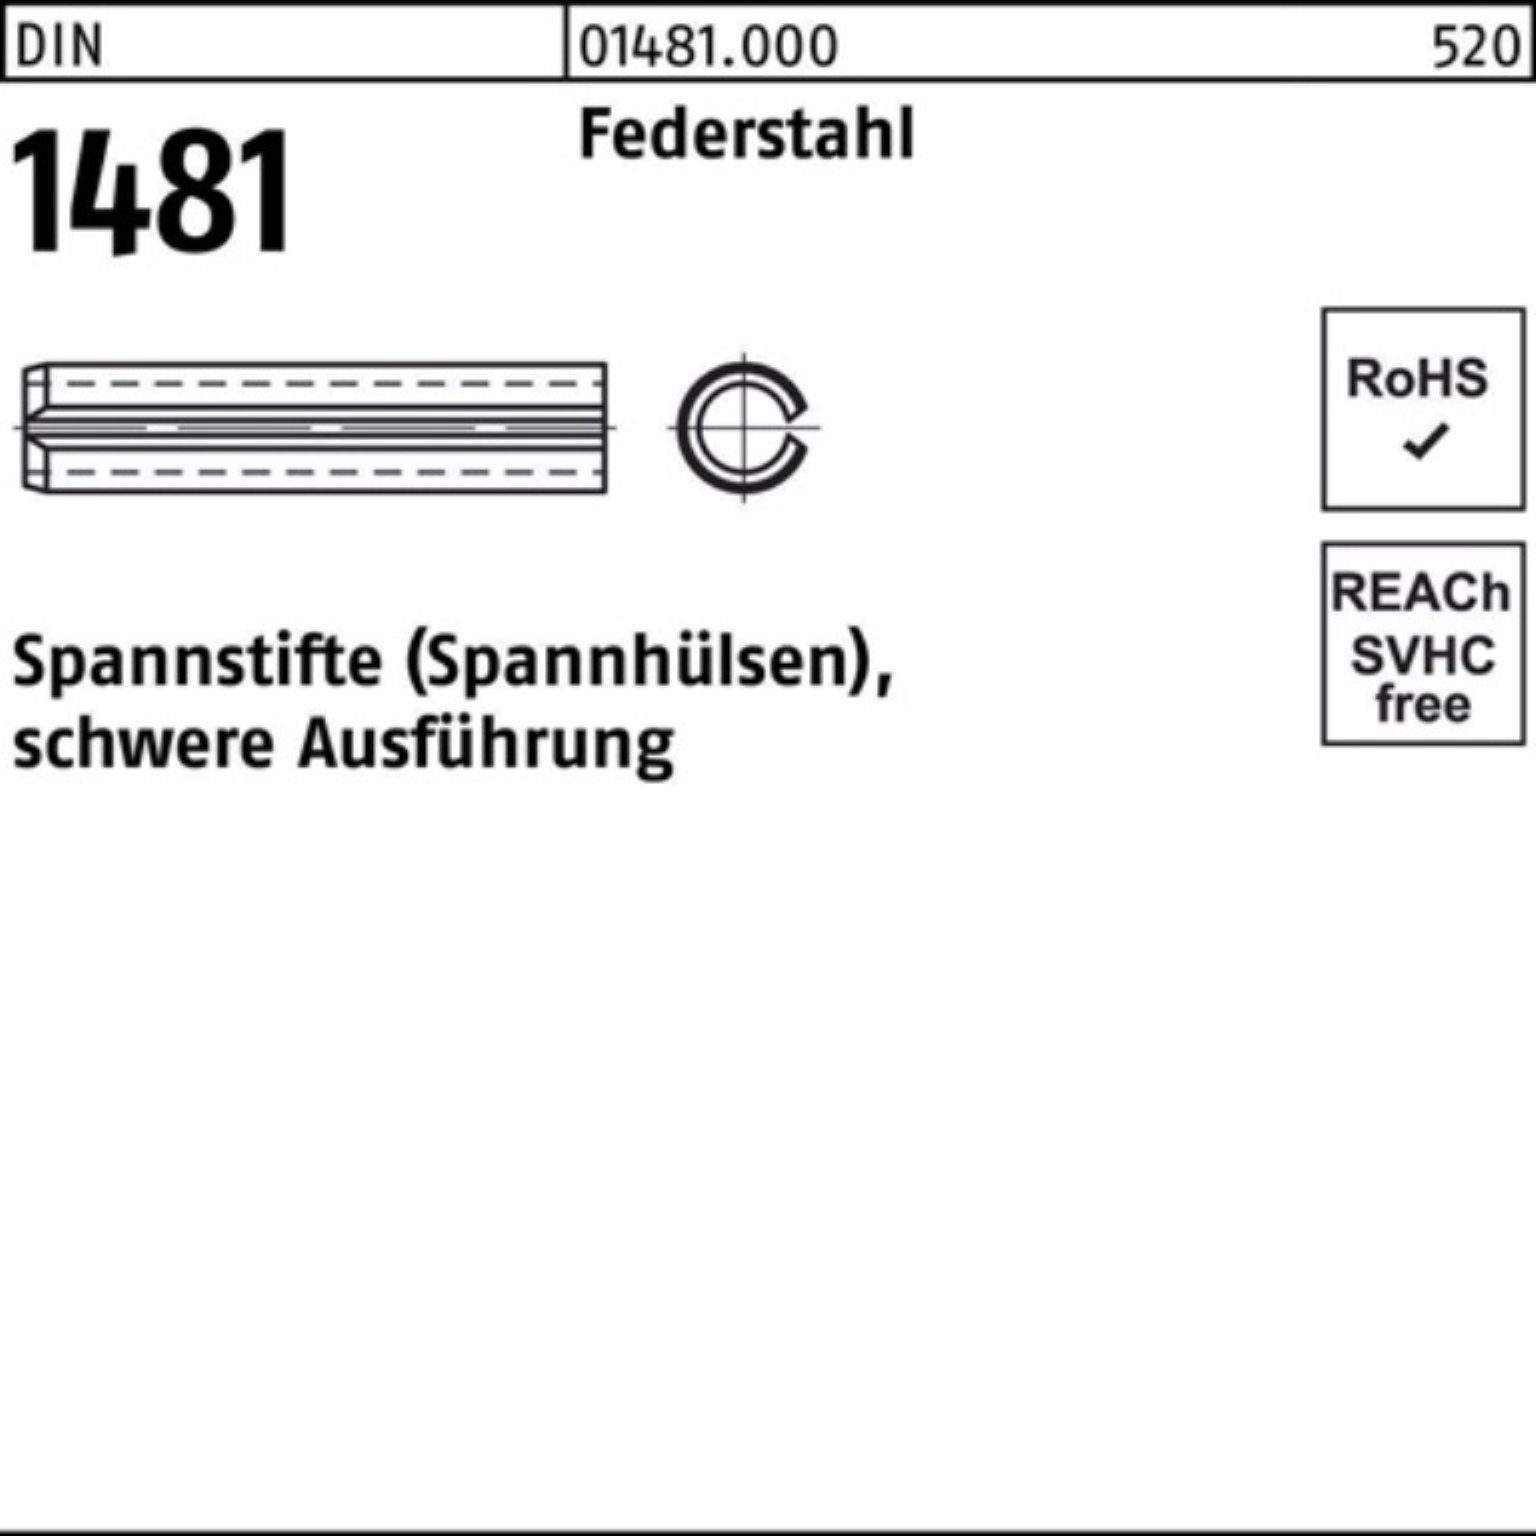 Reyher Spannstift 100er Pack Spannstift DIN 1481 21x 140 Federstahl schwere Ausführung